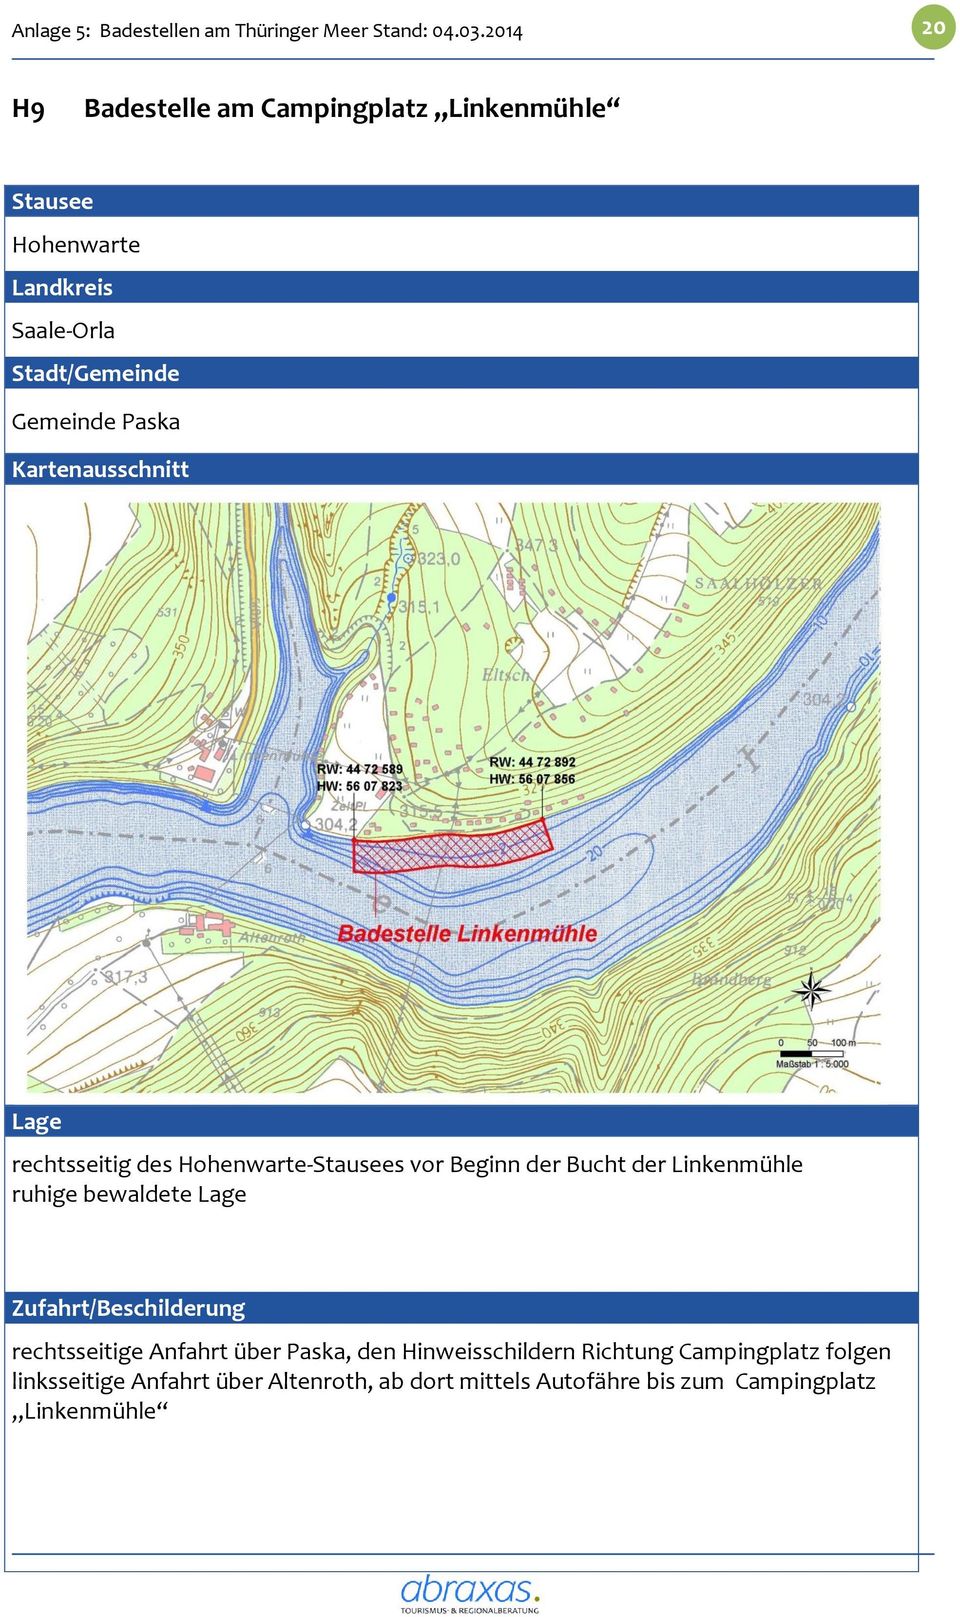 Kartenausschnitt Lage rechtsseitig des Hohenwarte-Stausees vor Beginn der Bucht der Linkenmühle ruhige bewaldete Lage